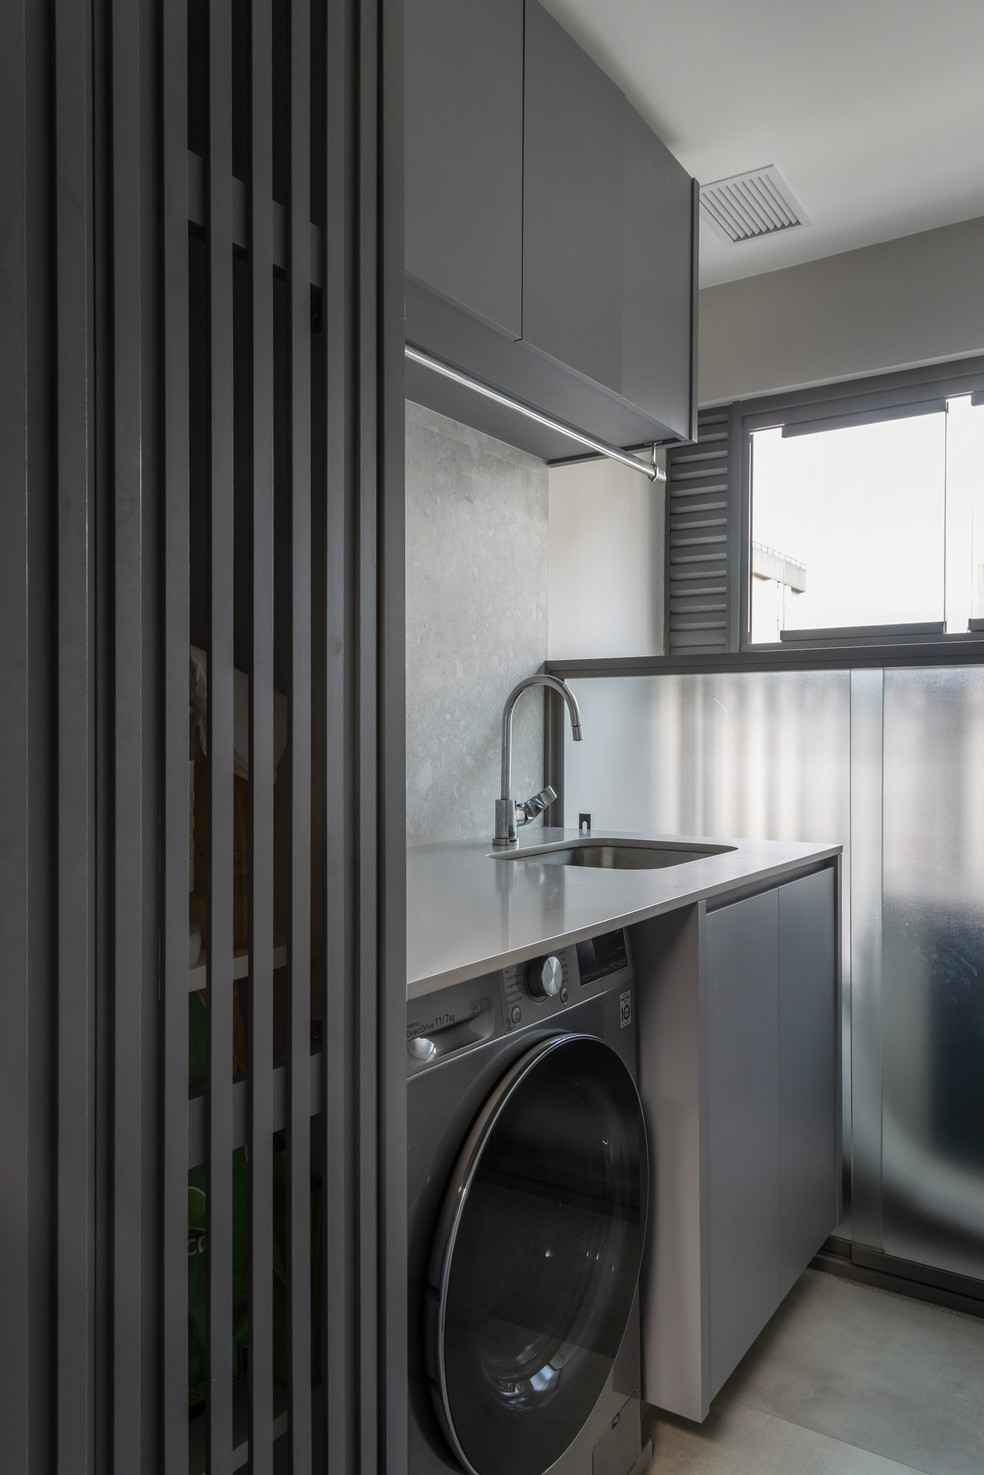 LAVANDERIA | A lavanderia segue o mesmo tom da cozinha, criando unidade entre os ambientes — Foto: Evelyn Müller / Divulgação